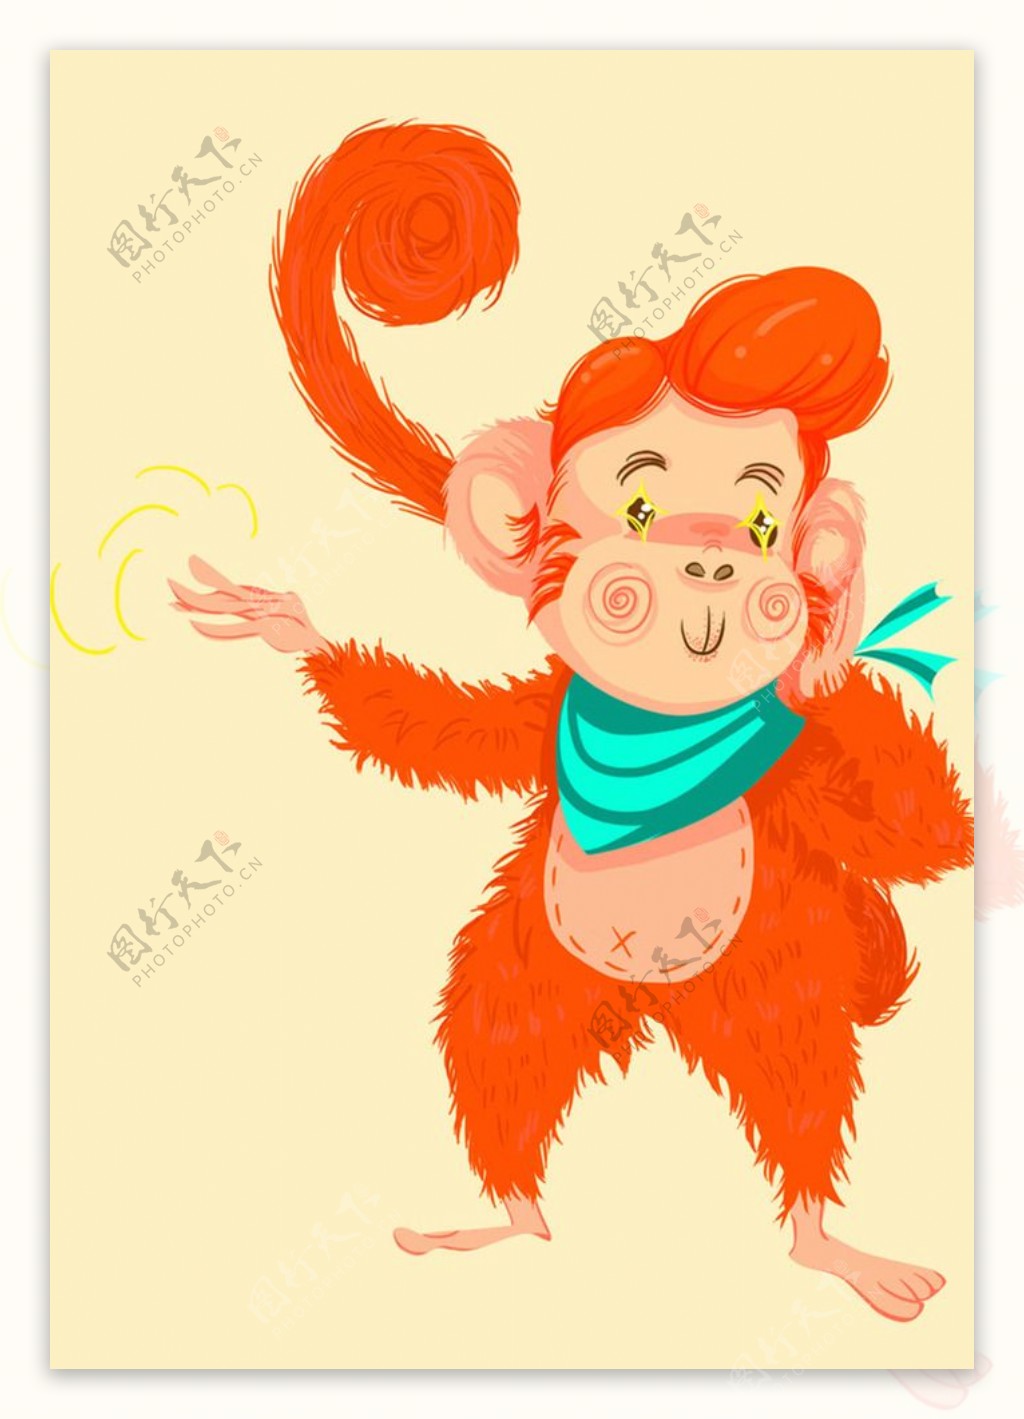 从古至今猴子为何特别讨喜?常出现在谐音吉祥话中——人民政协网